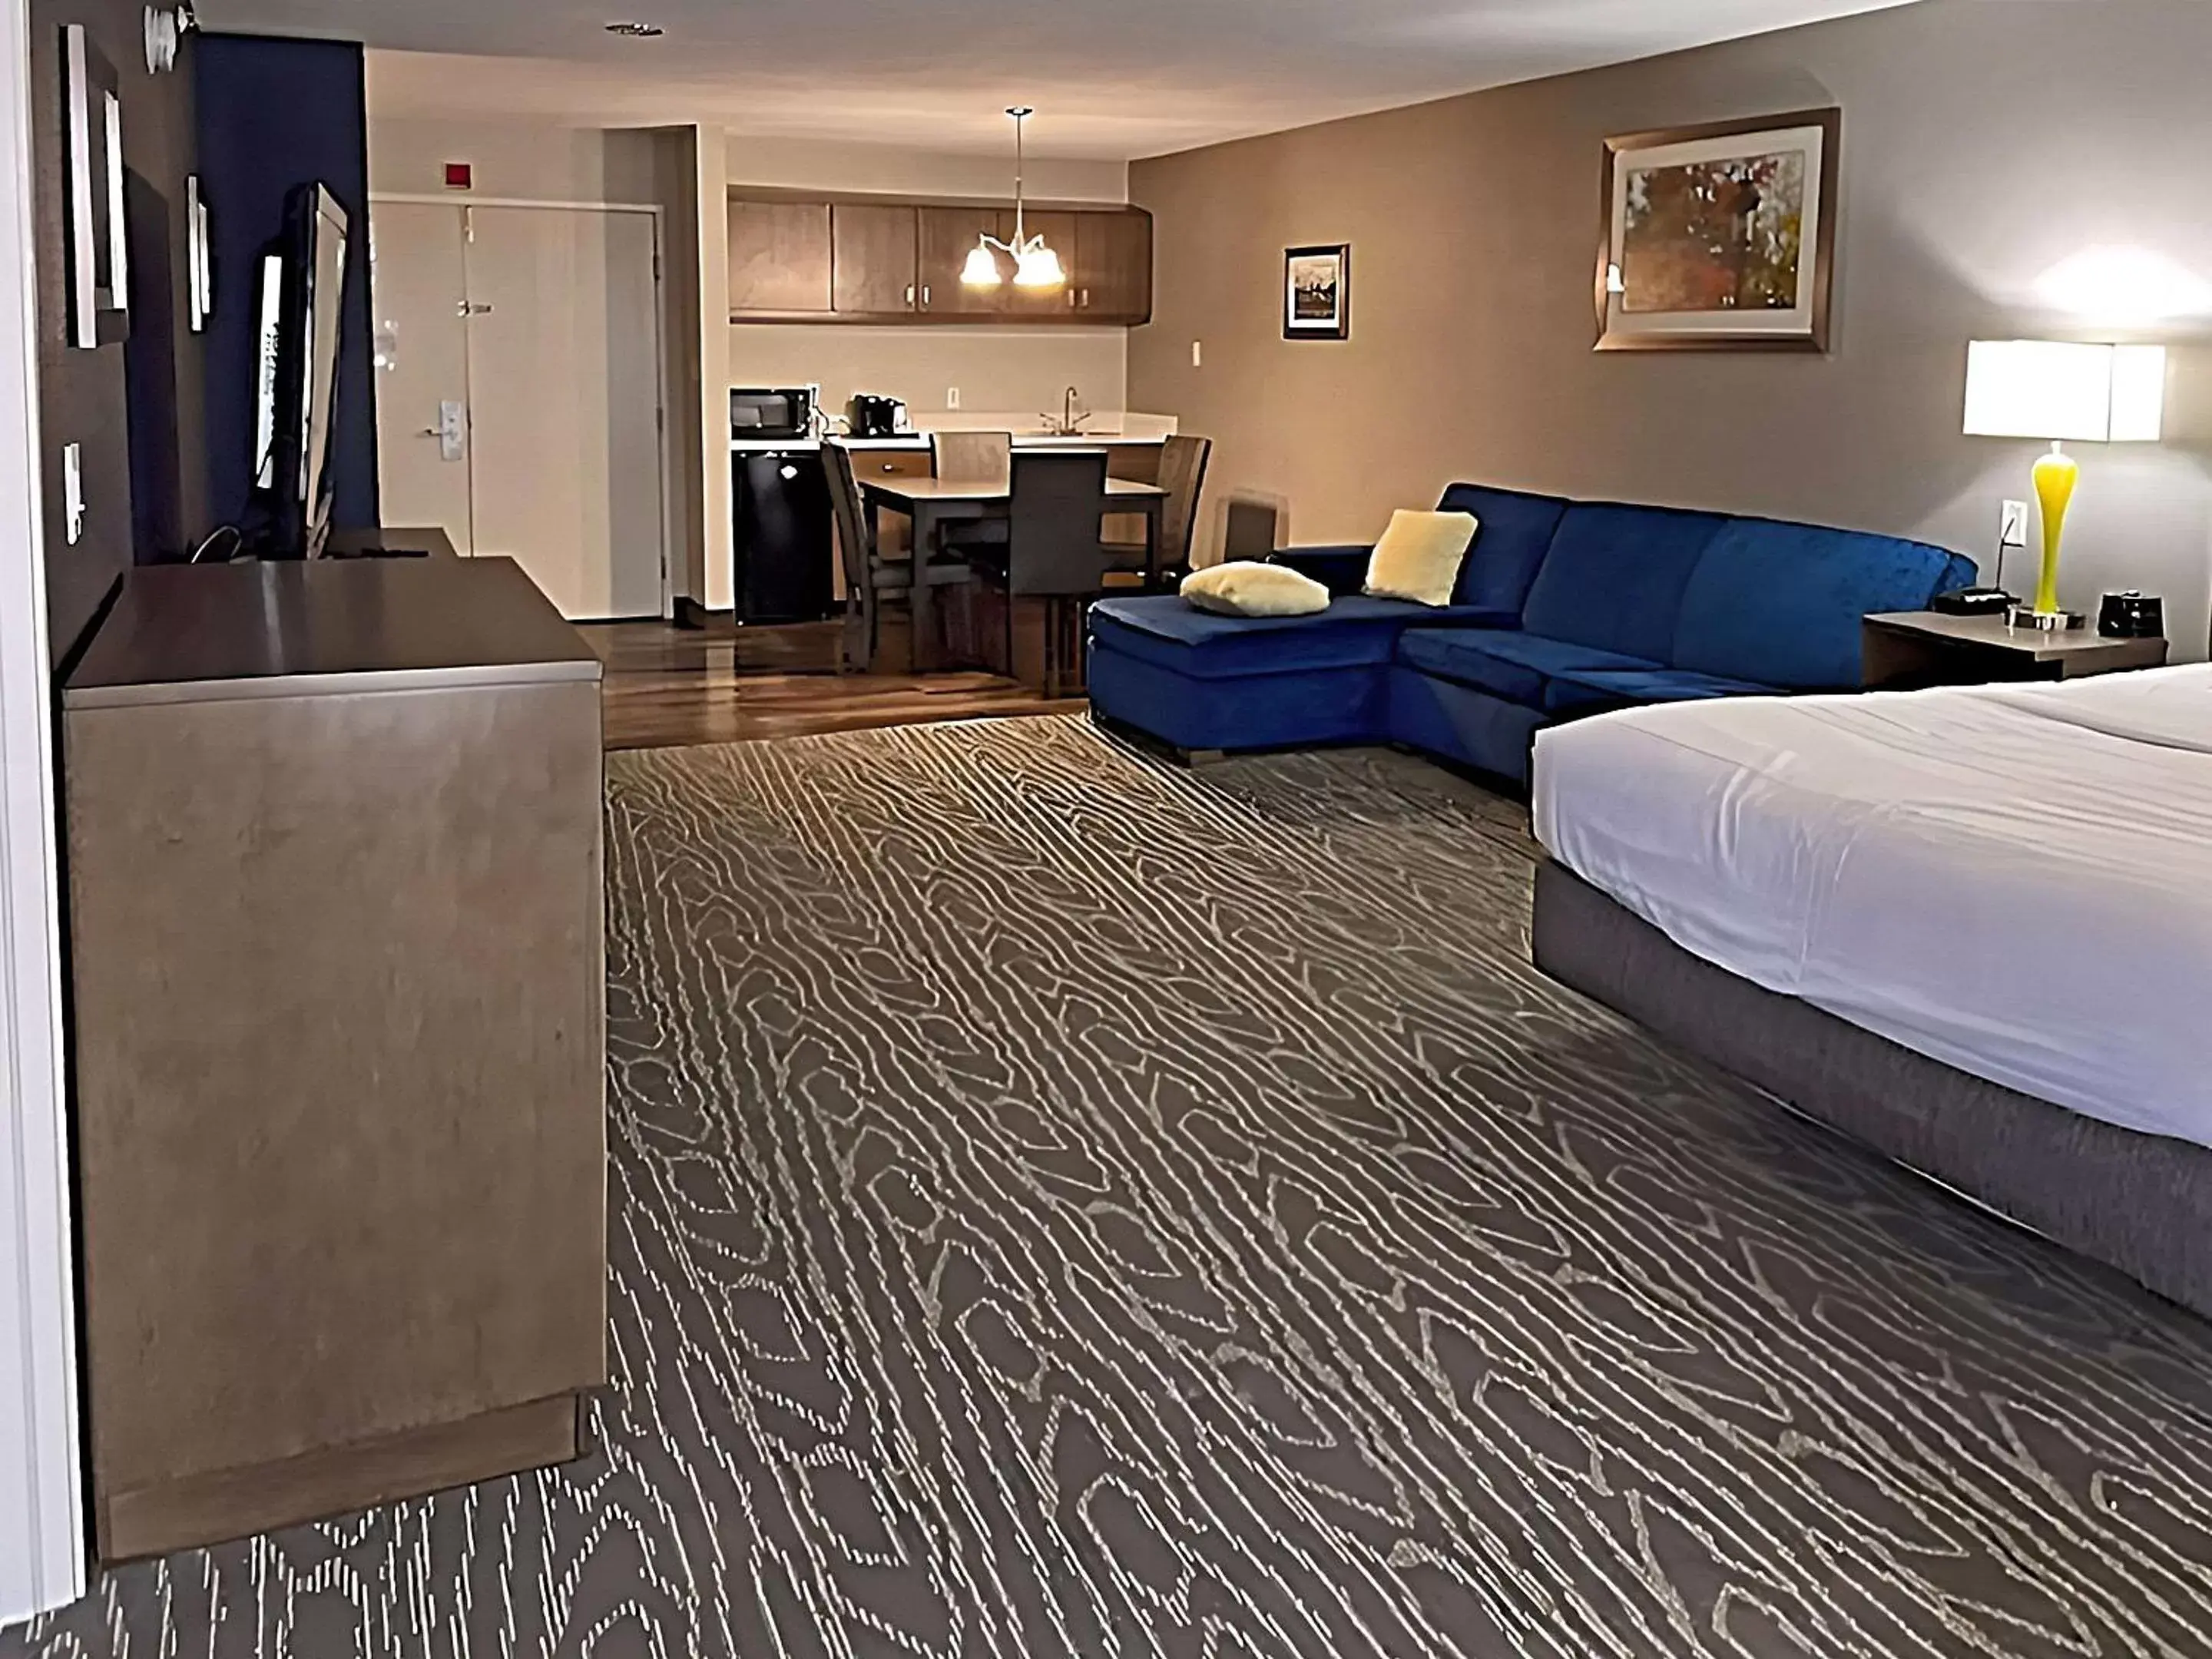 Bedroom in Comfort Inn & Suites Tipp City - I-75